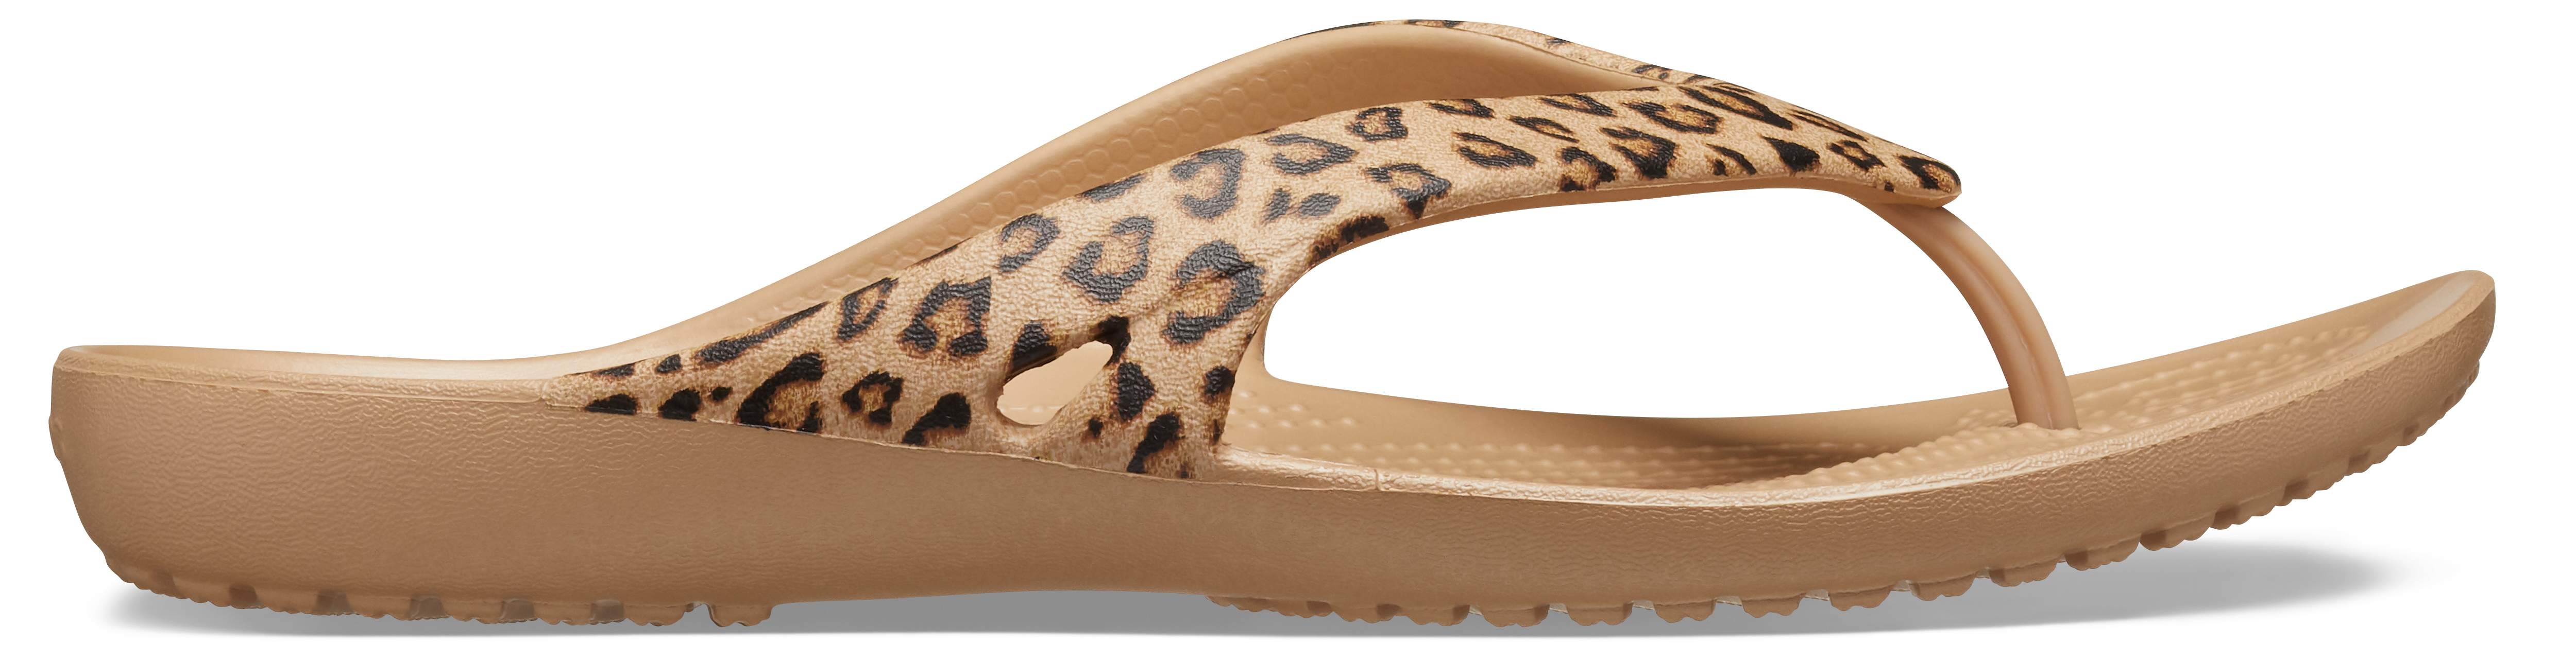 leopard print crocs flip flops